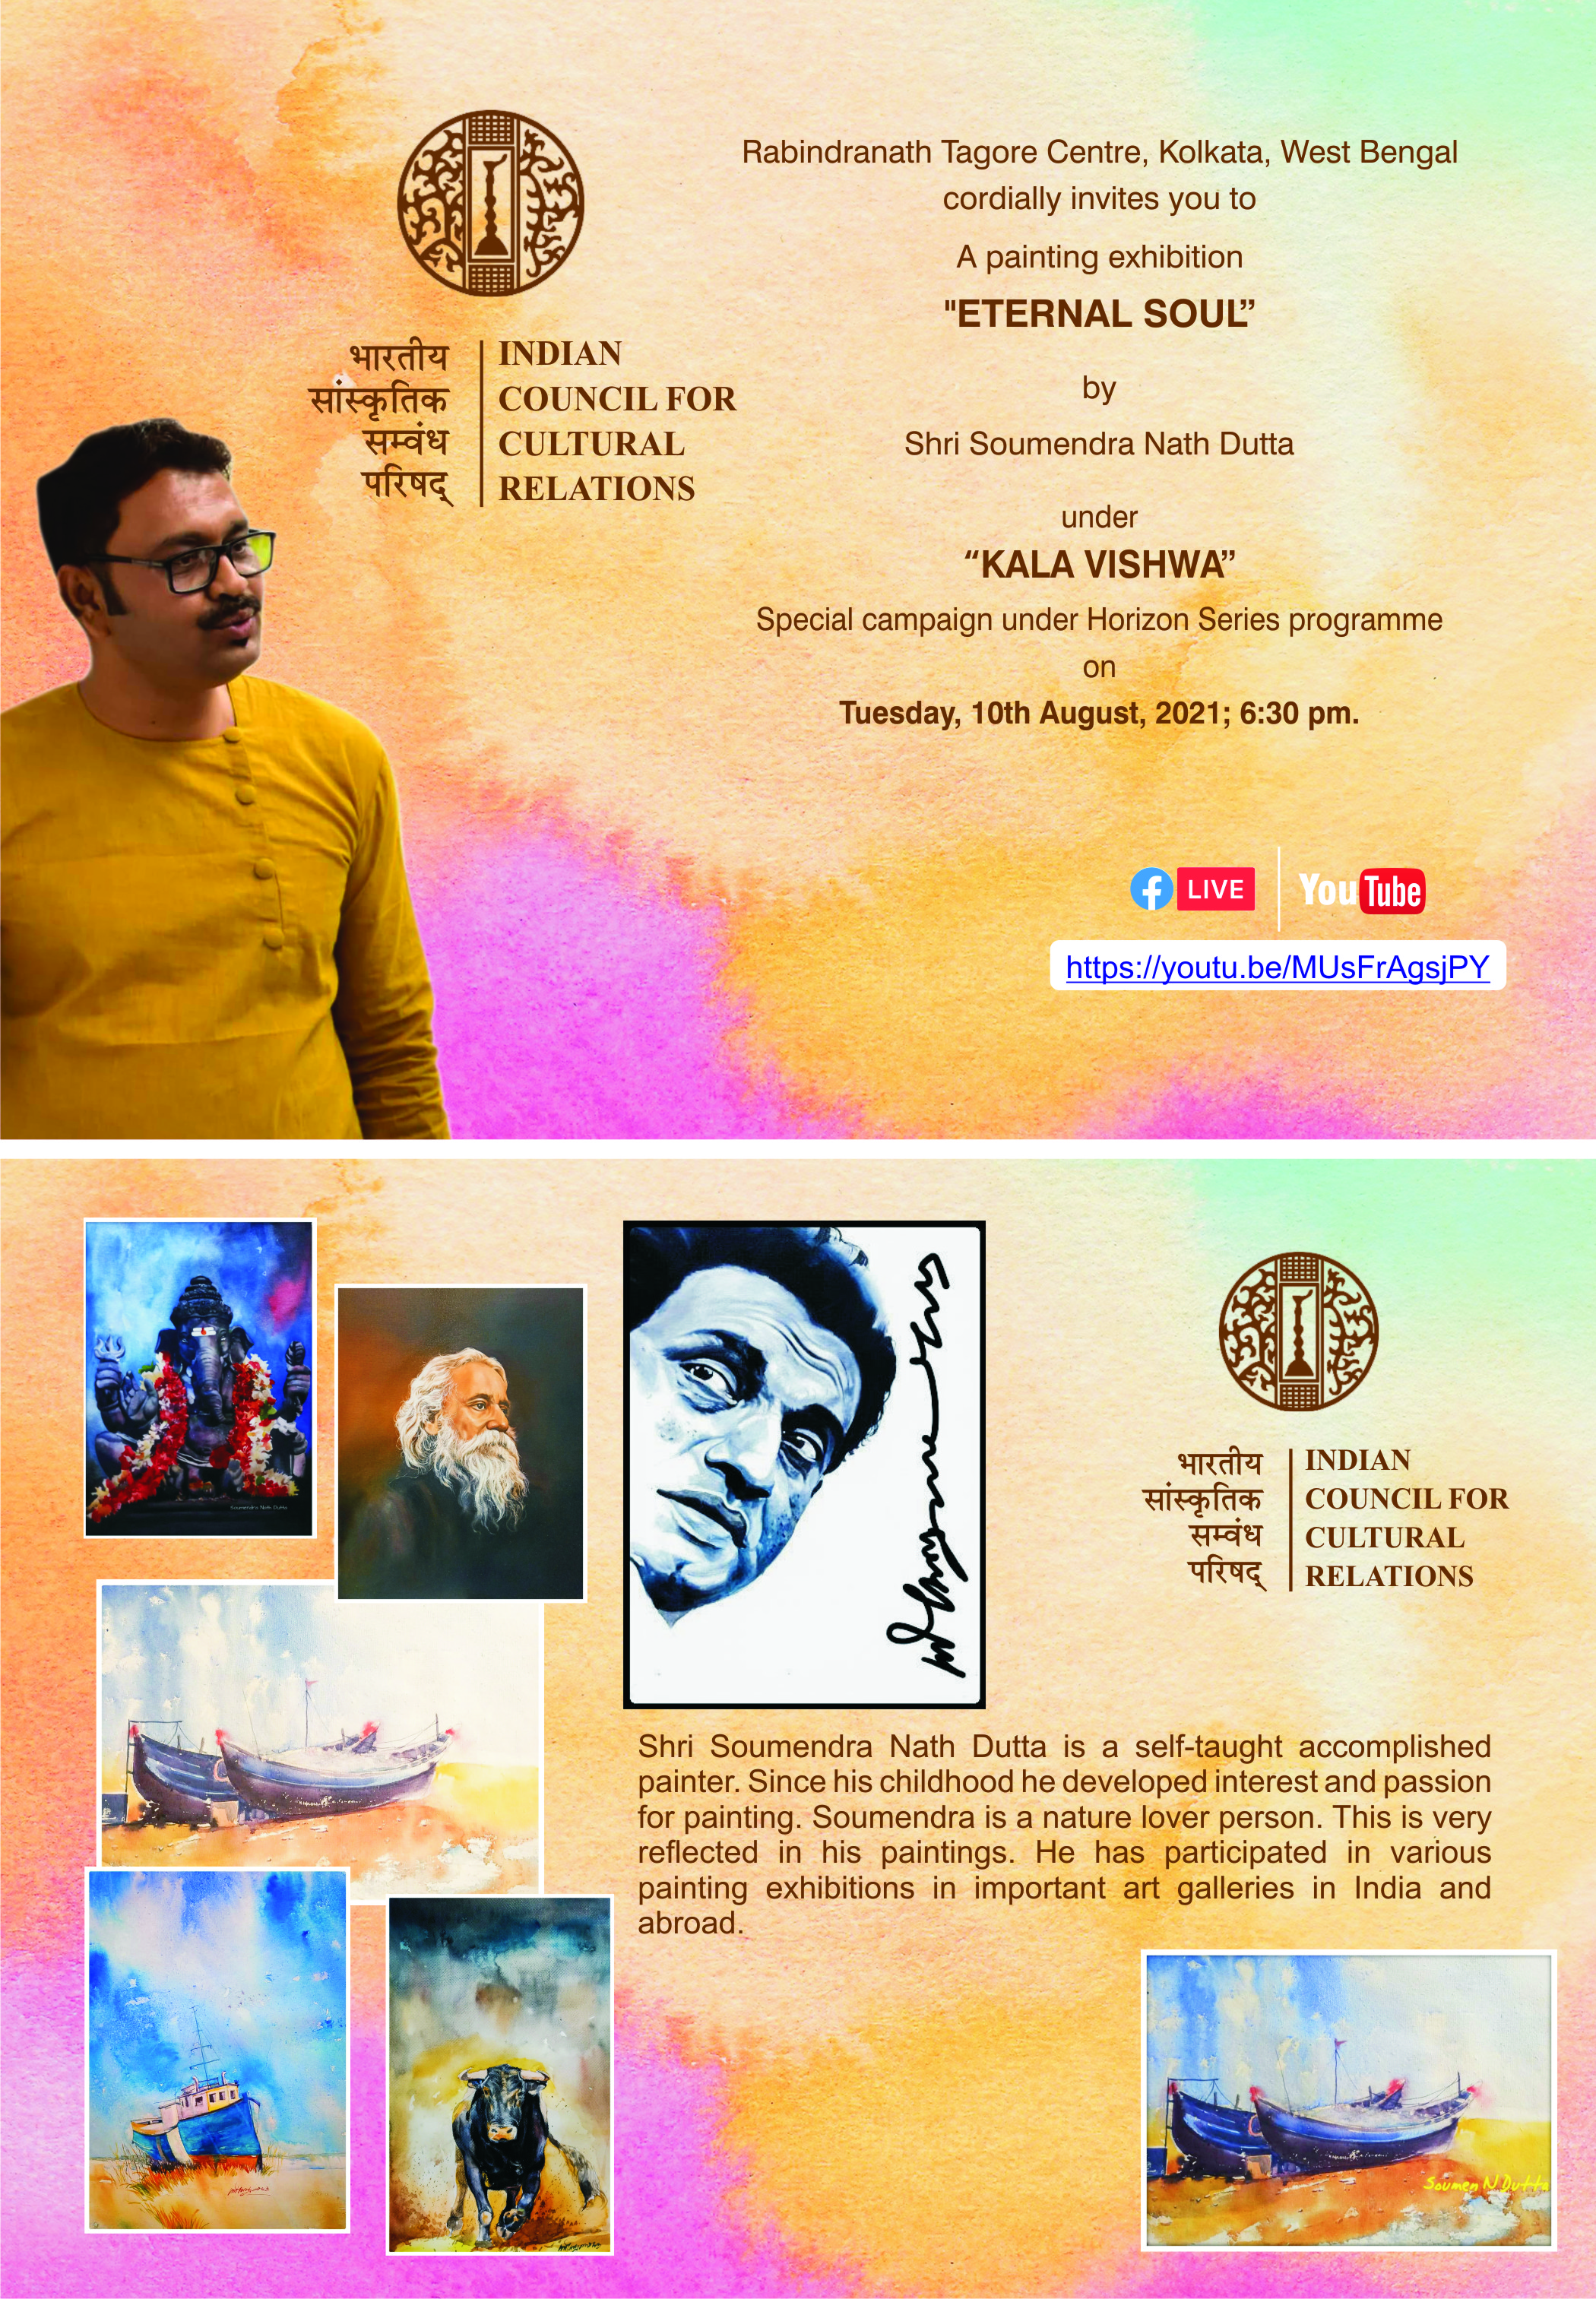 ICCR RTC कोलकाता, कला विश्व अभियान 10 अगस्त, 2021 को शाम 6.30 बजे क्षितिज श्रृंखला के तहत